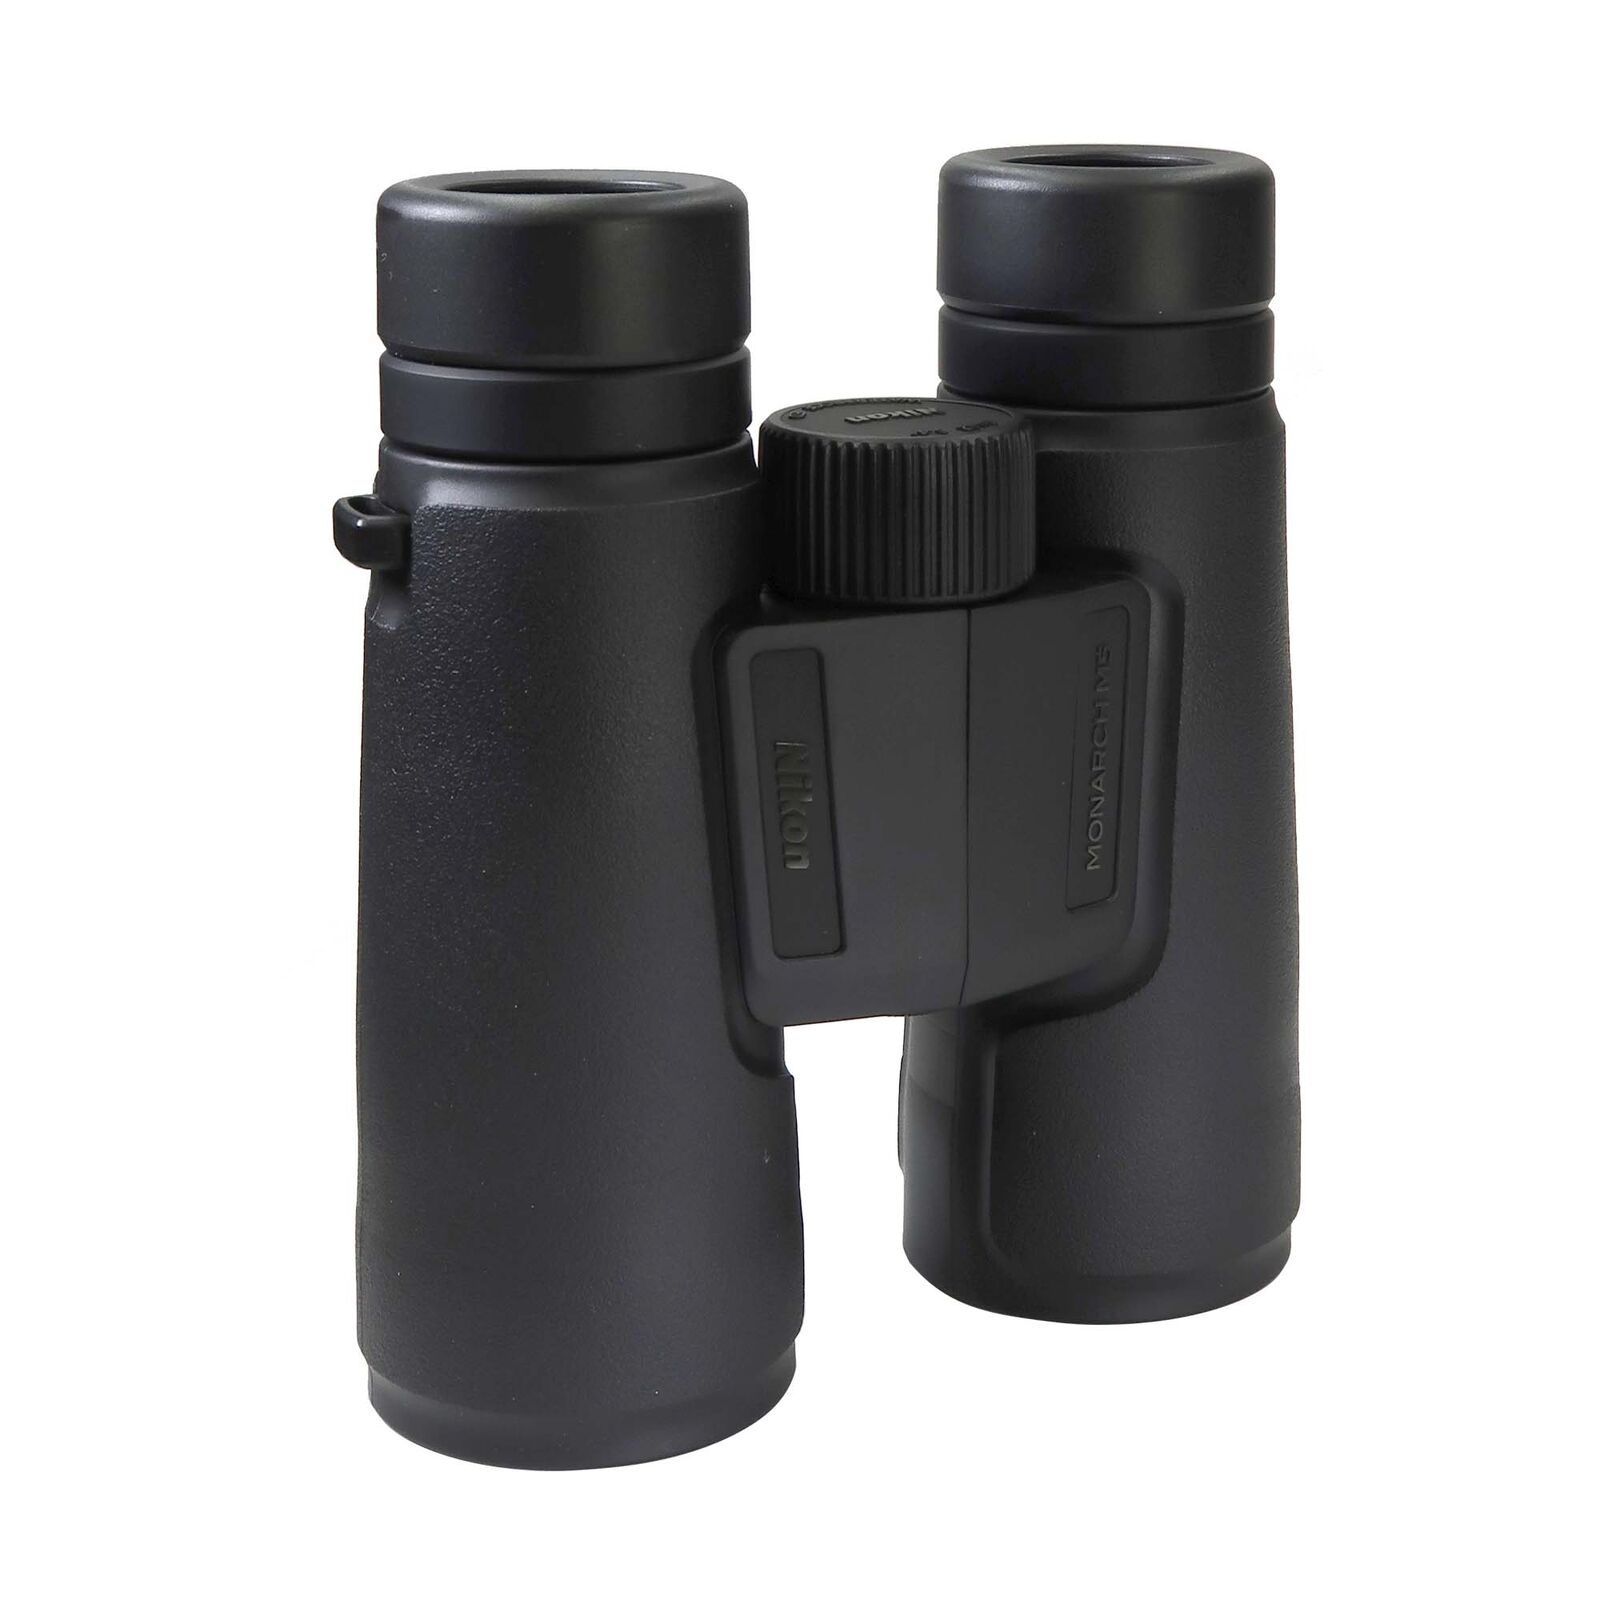 Nikon 8X42 Monarch M5 Waterproof Roof Prism Binoculars With Vivitar Cleaning Kit